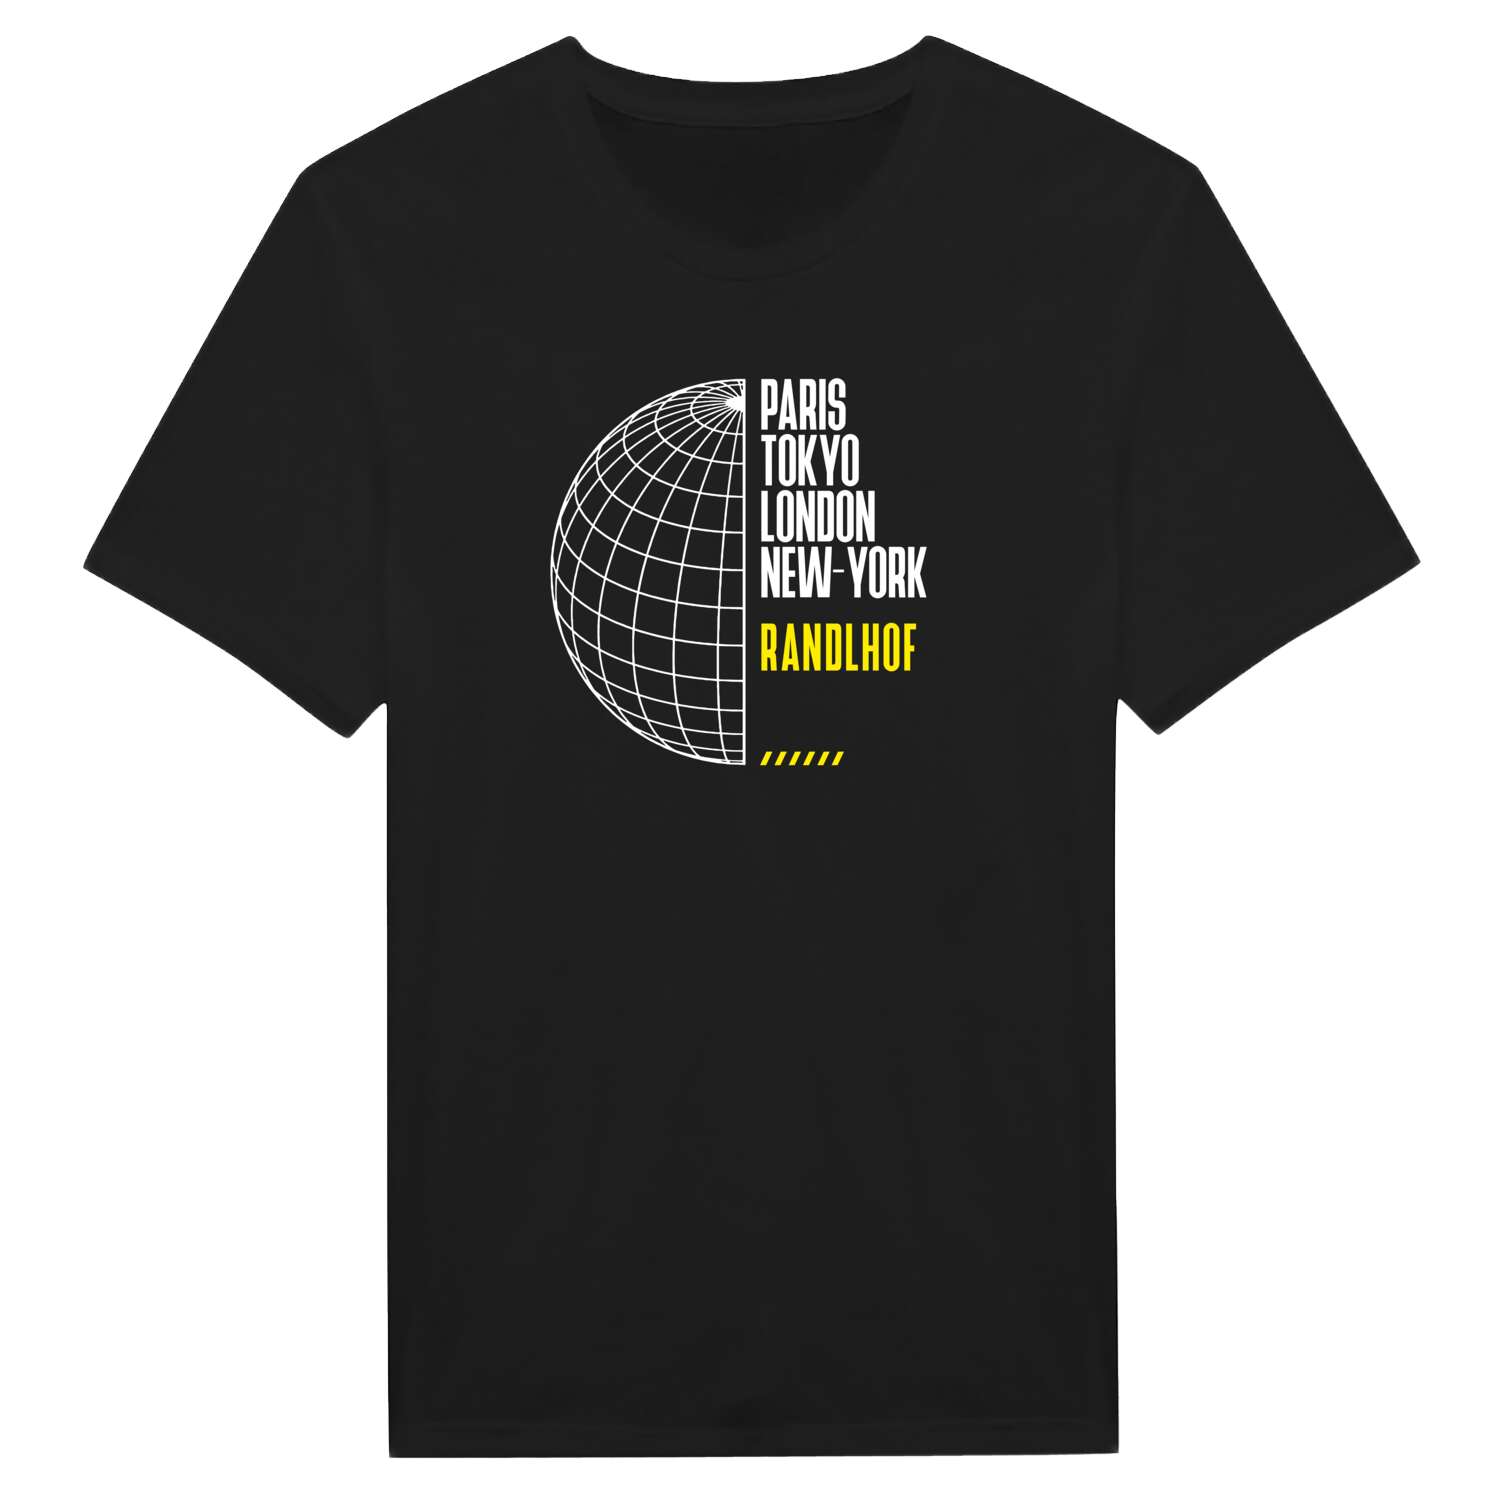 Randlhof T-Shirt »Paris Tokyo London«